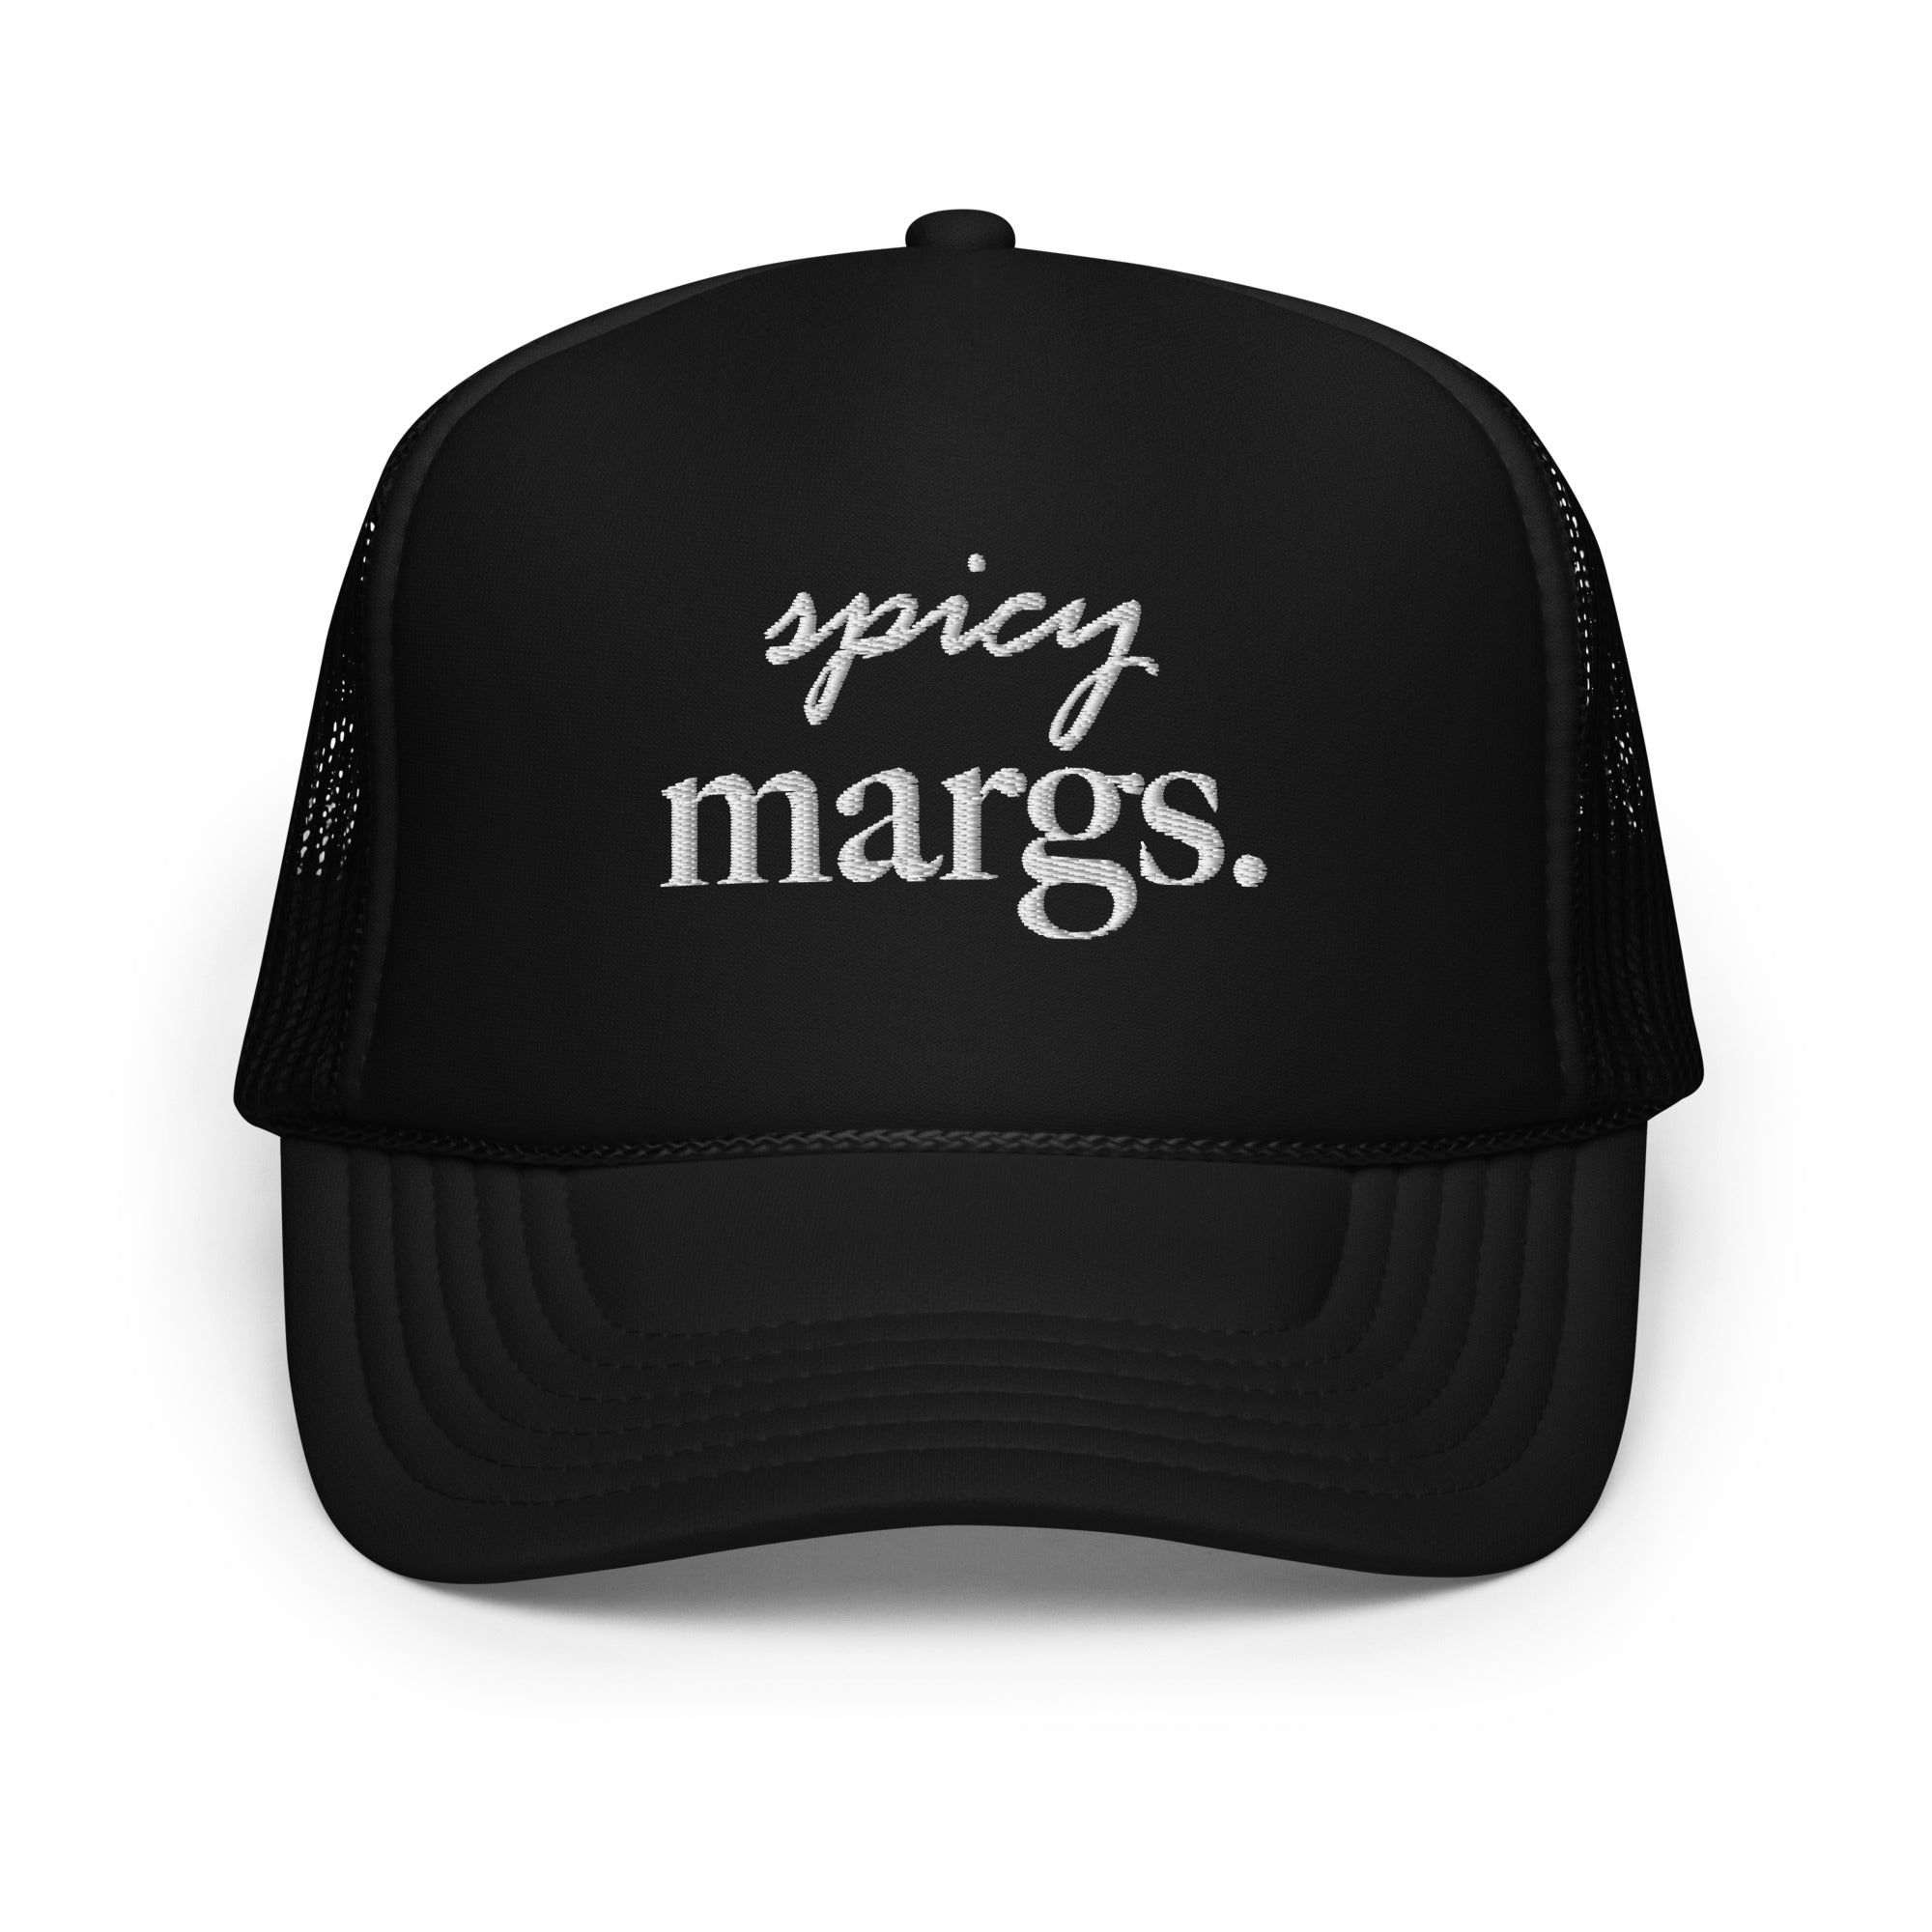 spicy margs. Foam Trucker Hat